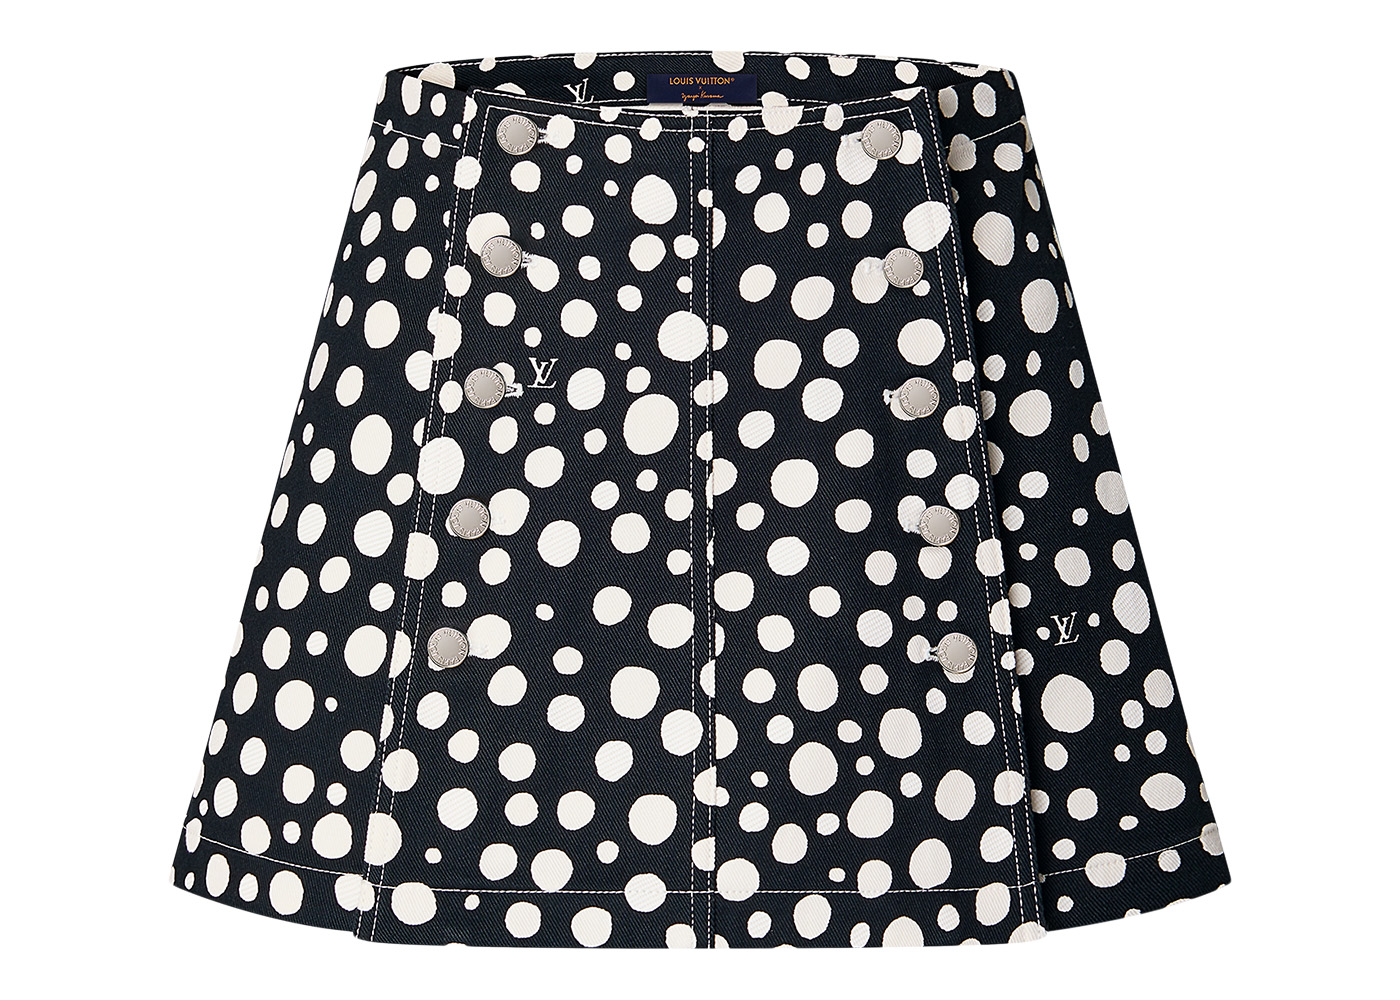 Louis Vuitton x Yayoi Kusama Infinity Dots Mini Skirt Black/White